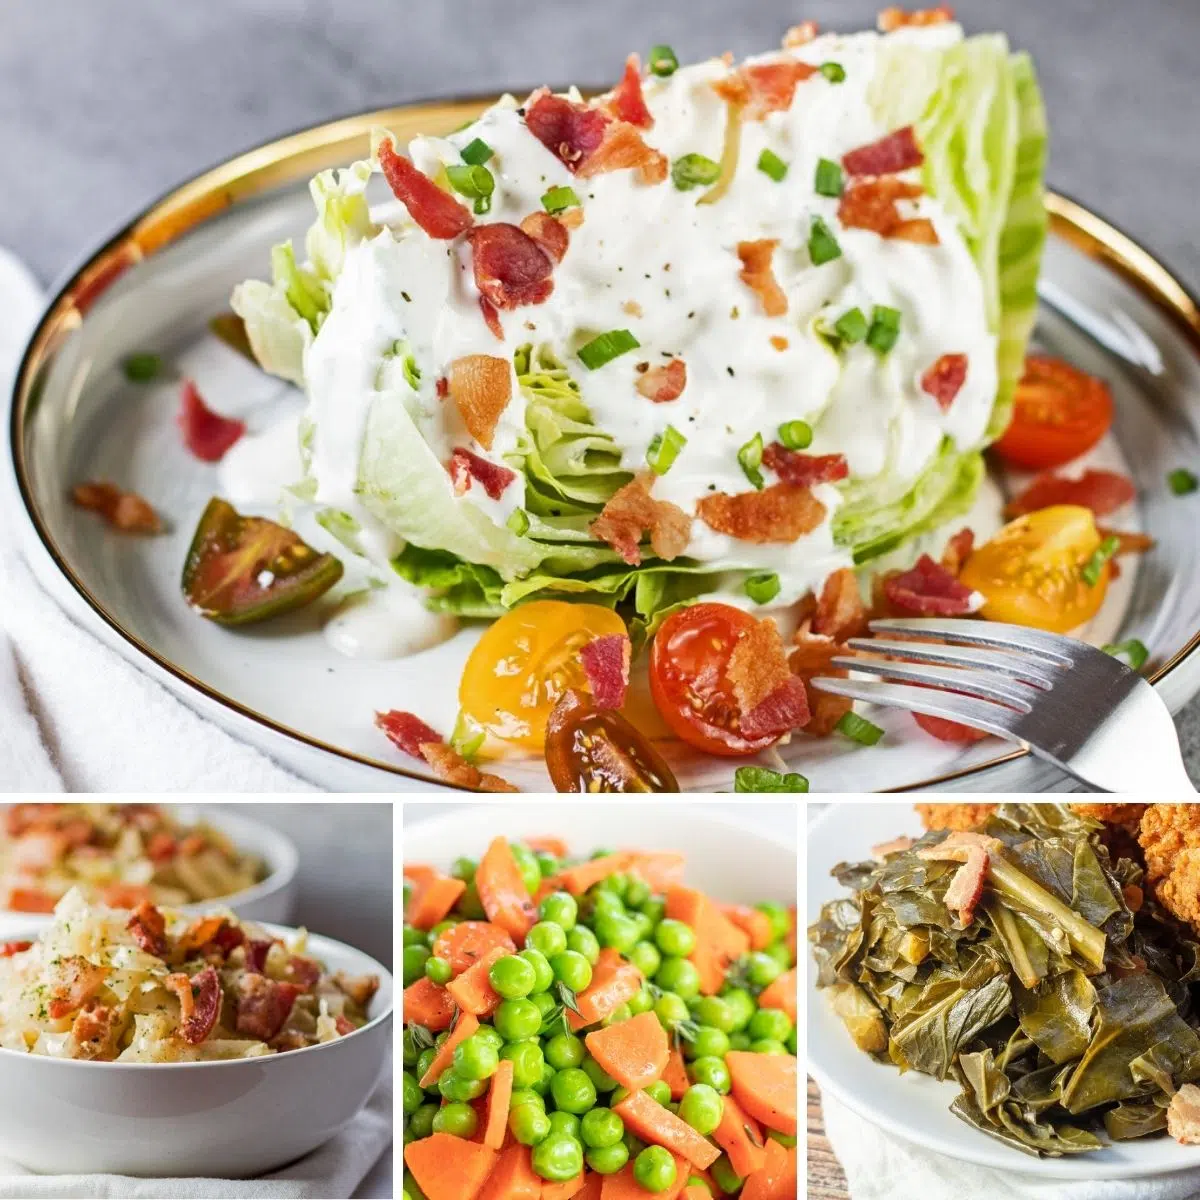 Лучшие овощные гарниры, которые можно подавать к любой еде, как показано в этих 4 рецептах в виде коллажа.